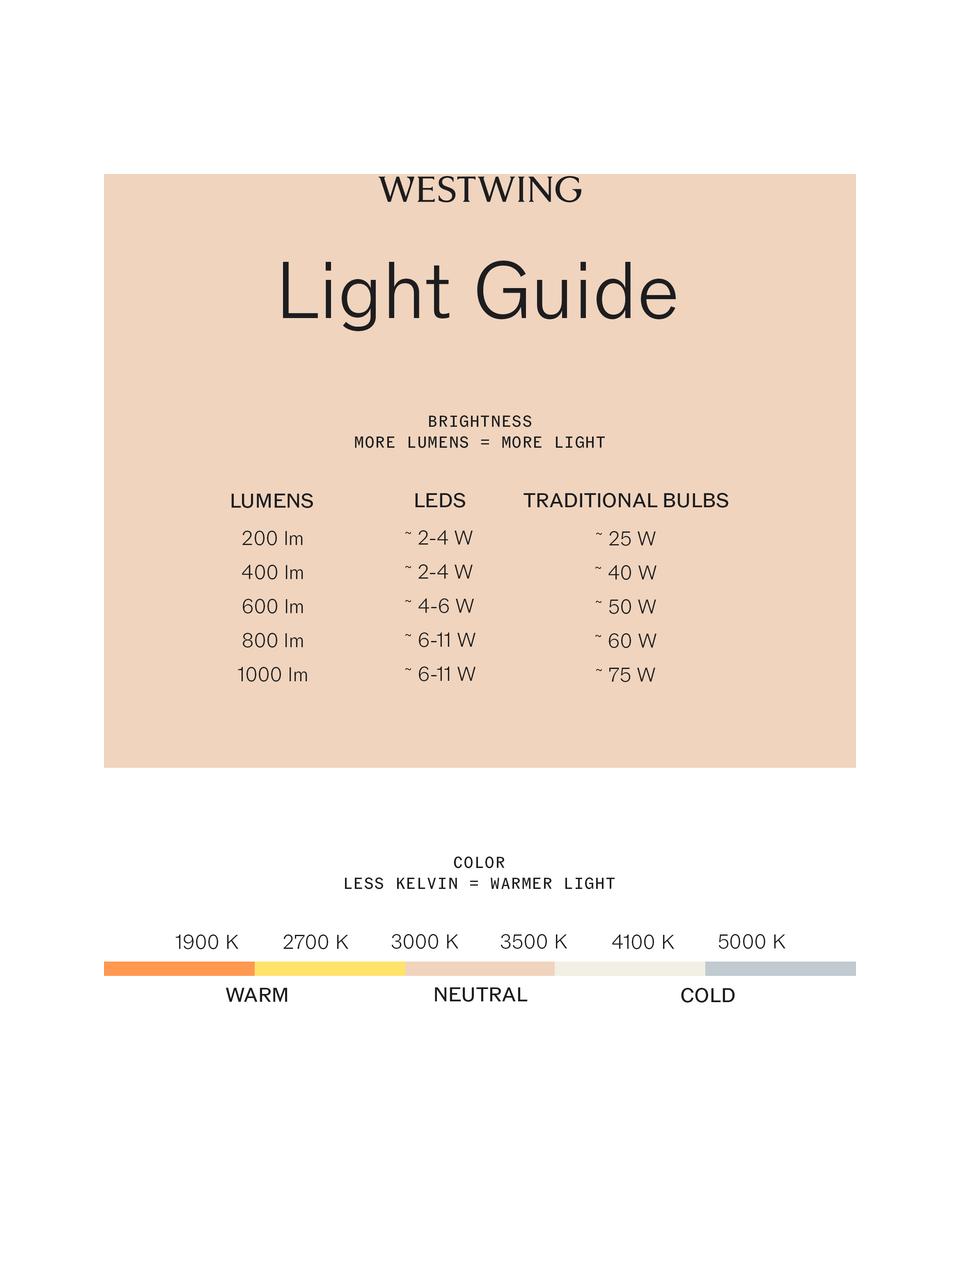 Lampe d'extérieur LED mobile à intensité variable et fonction tactile Lola, Blanc, rose, Ø 11 x haut. 32 cm